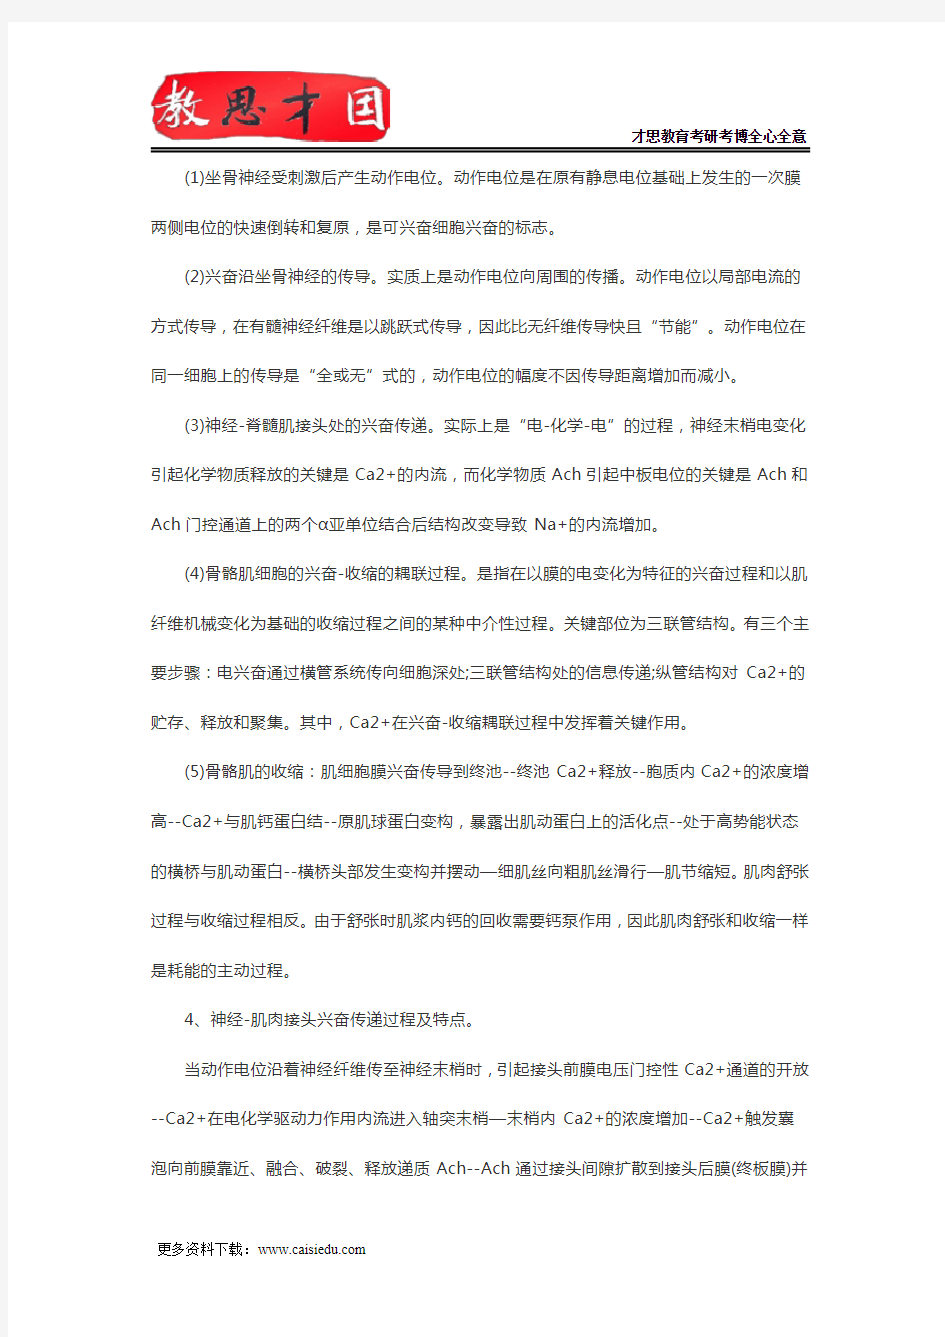 2016年北京协和医学院306西医综合考研生理学重点笔记(二)